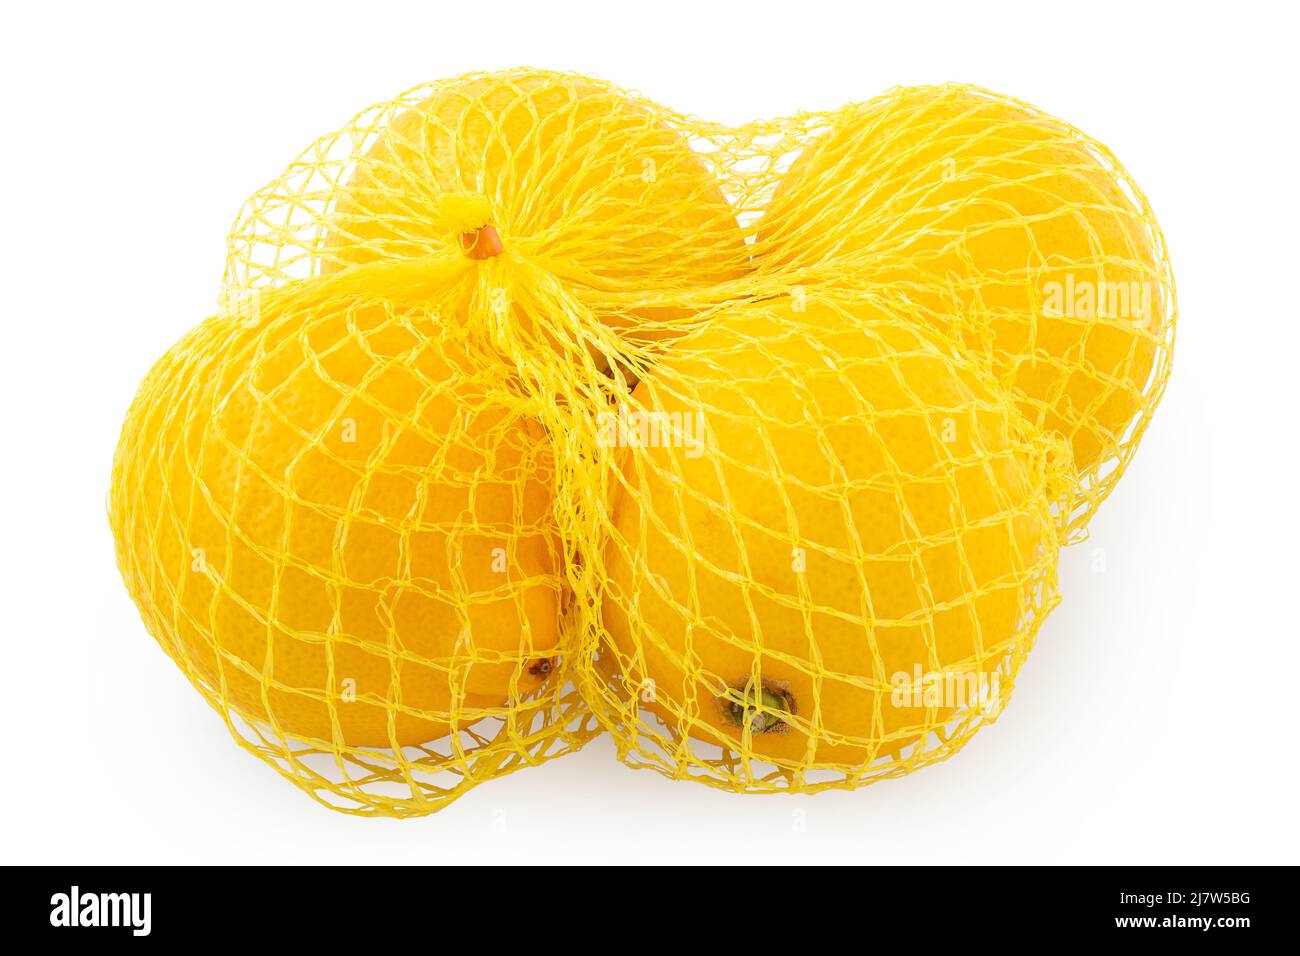 https://c8.alamy.com/comp/2J7W5BG/lemons-in-a-net-bag-isolated-on-white-2J7W5BG.jpg